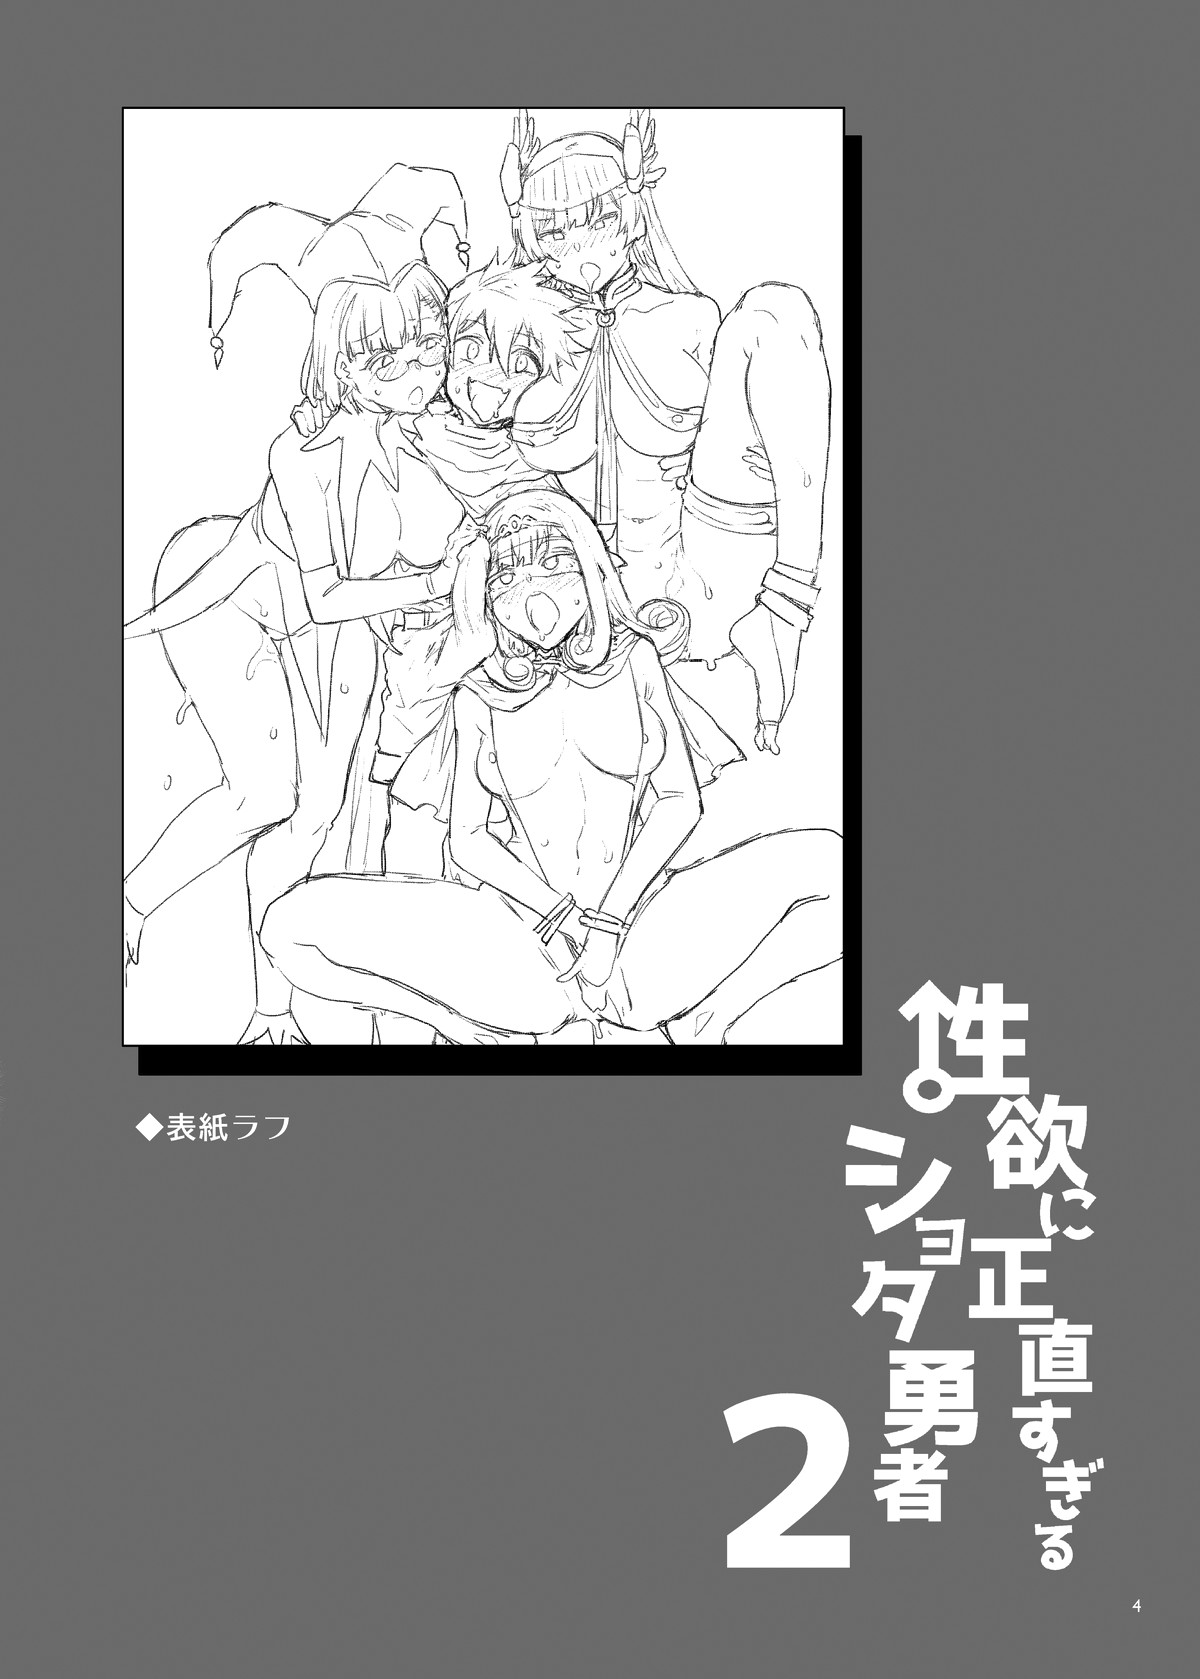 Hentai Manga Comic-Sexually Over-Honest Shota Hero 2-Read-3